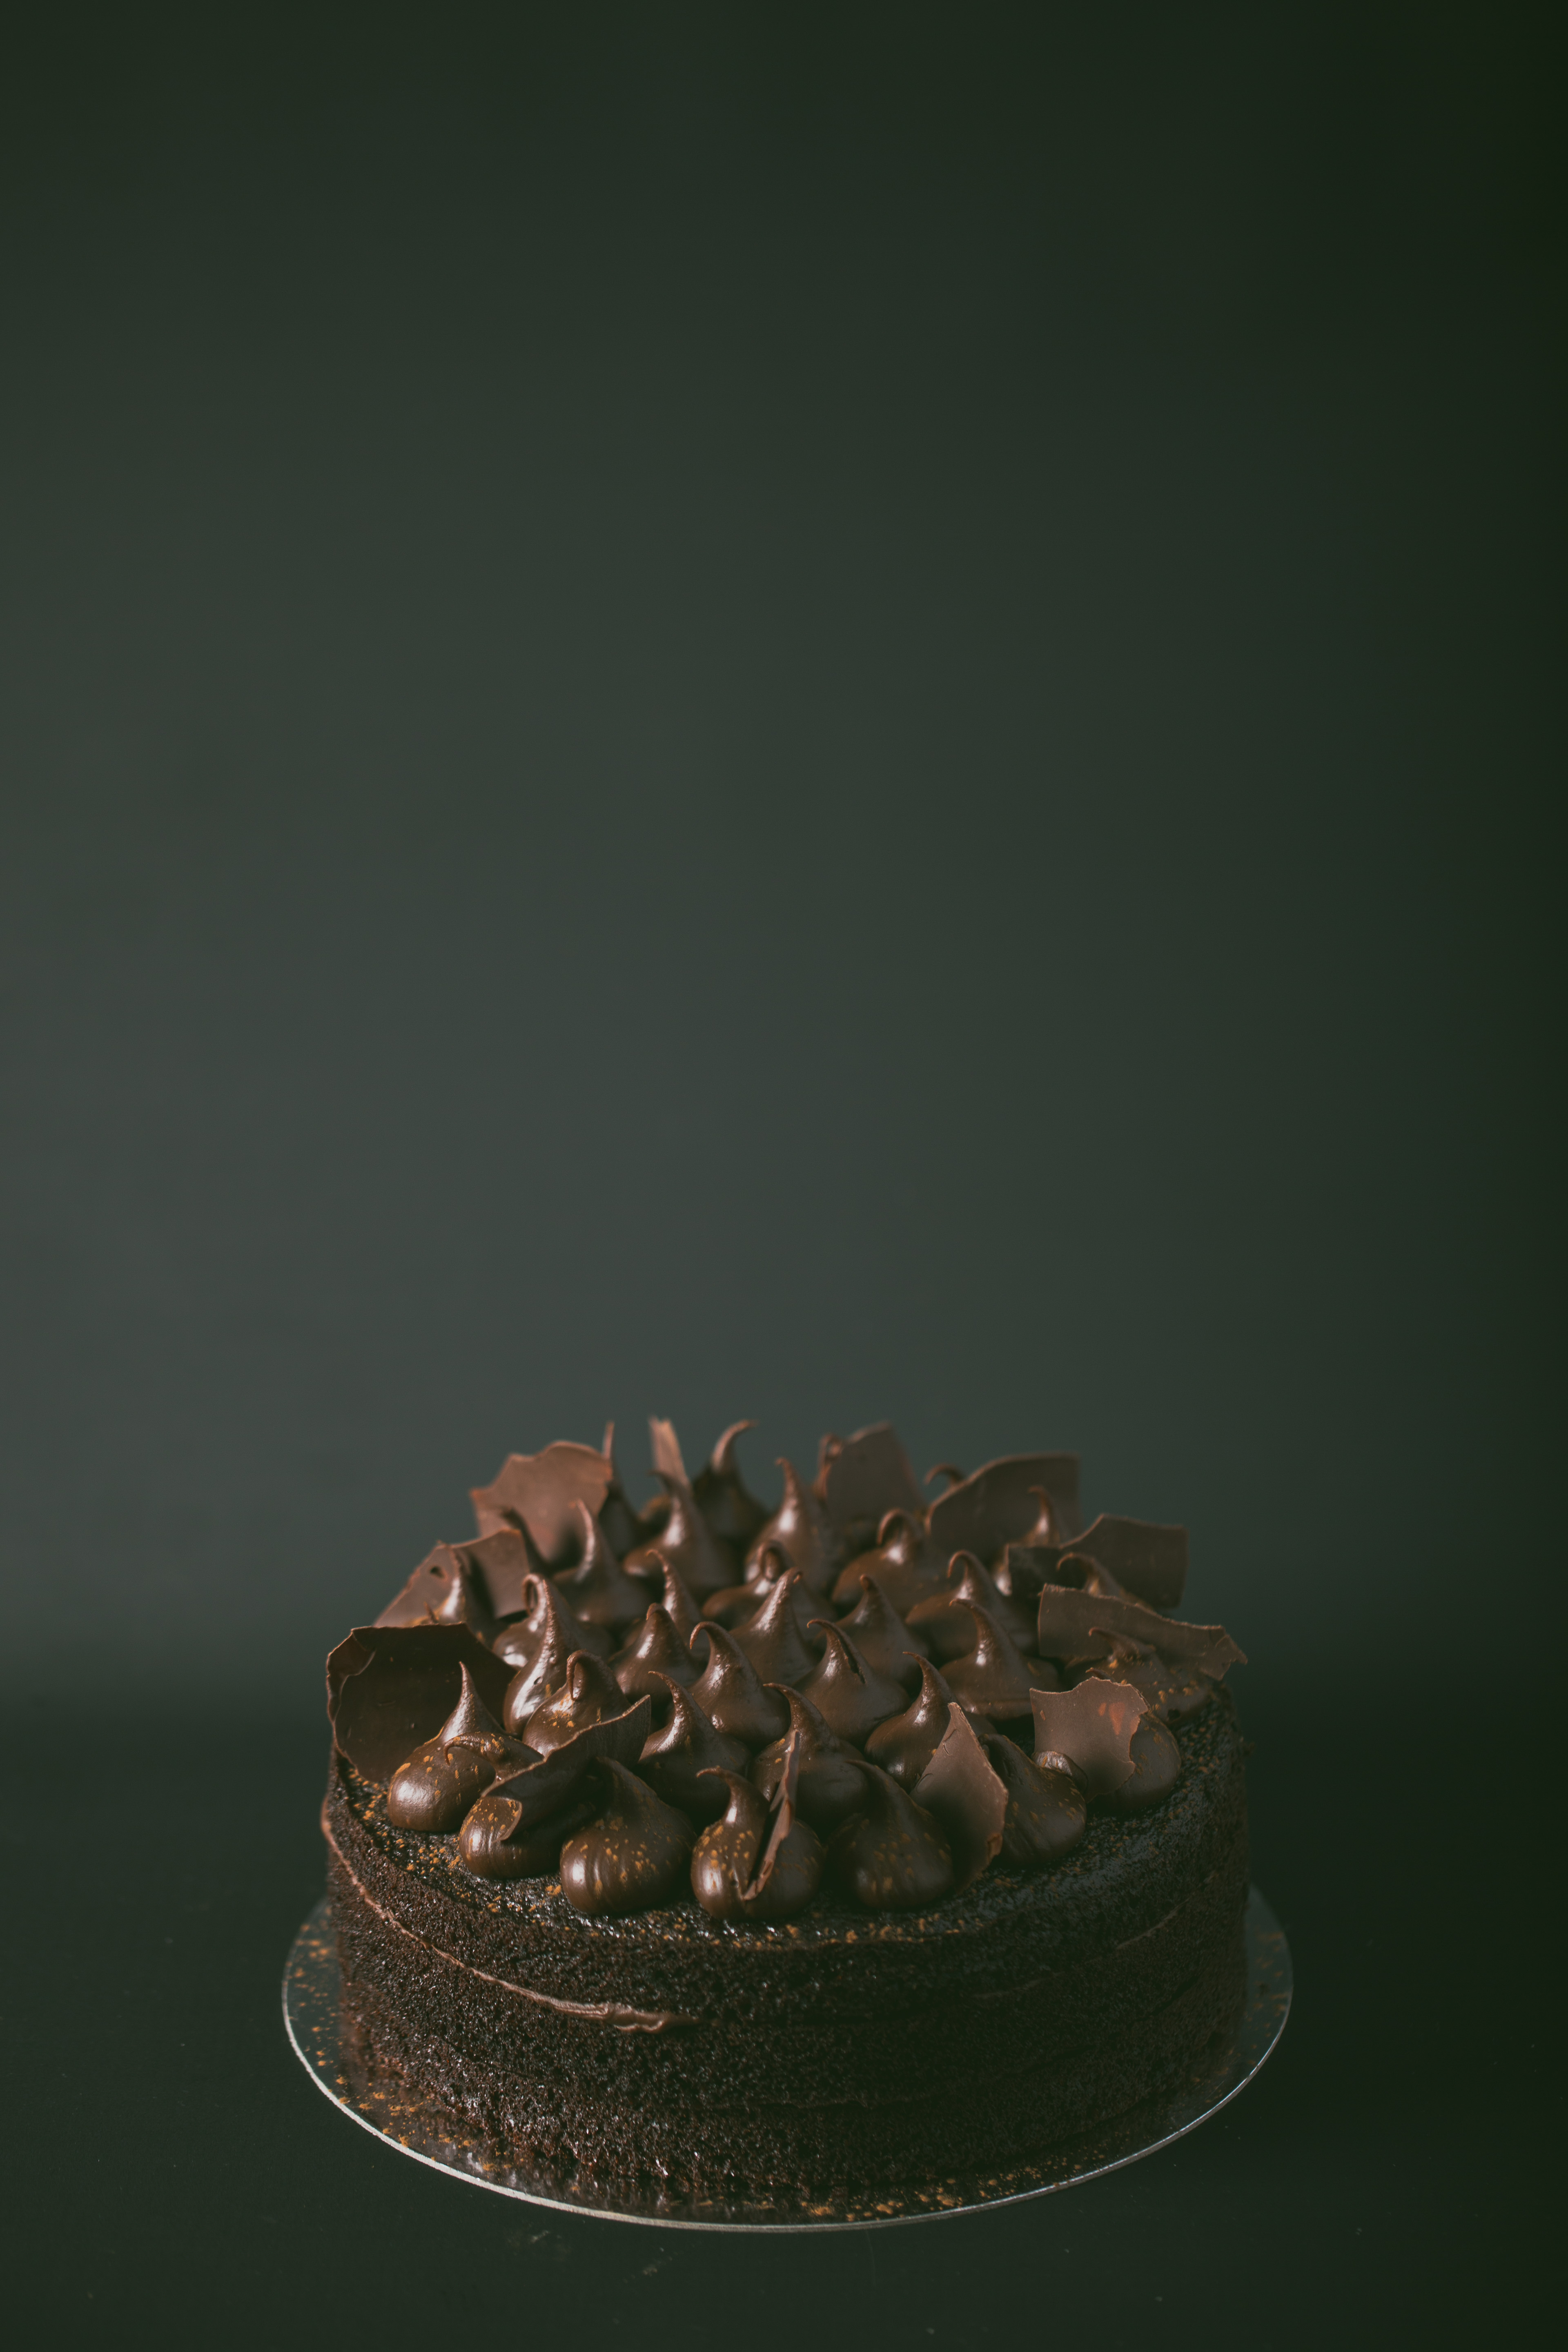 Chocolate Ganache cake